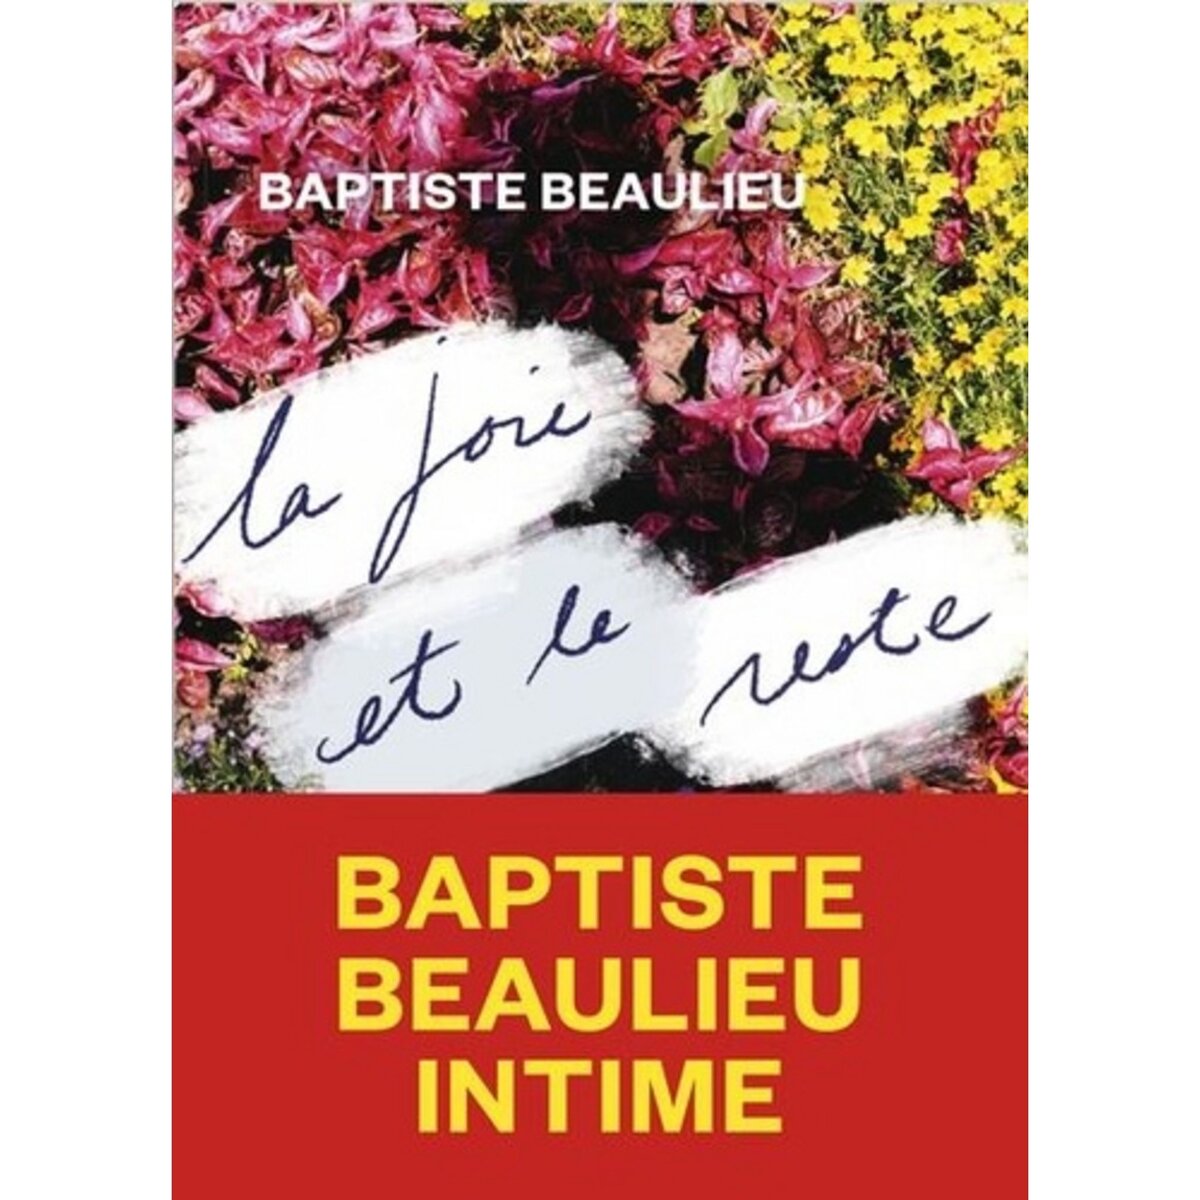  LA JOIE ET LE RESTE, Beaulieu Baptiste